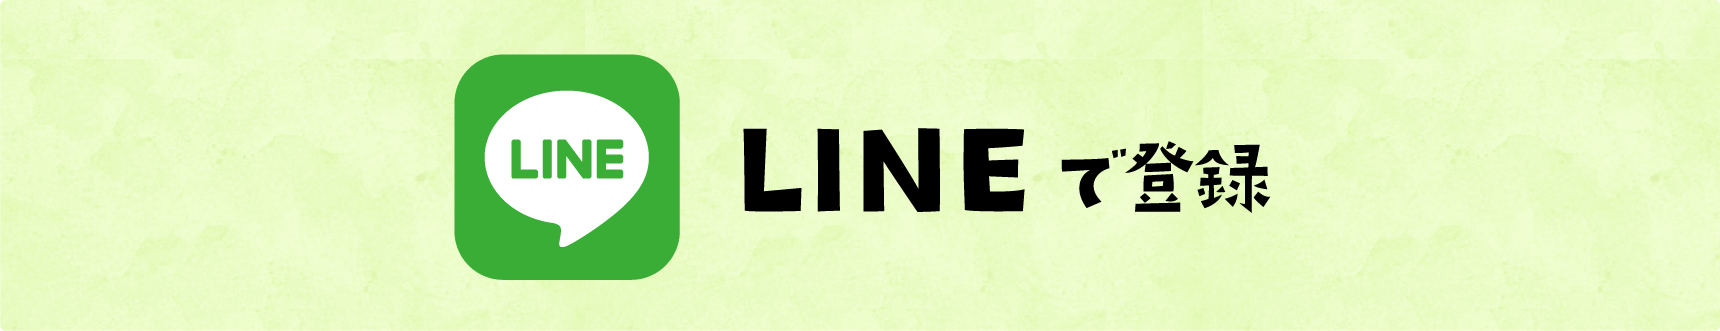 [タイトル]LINEで登録